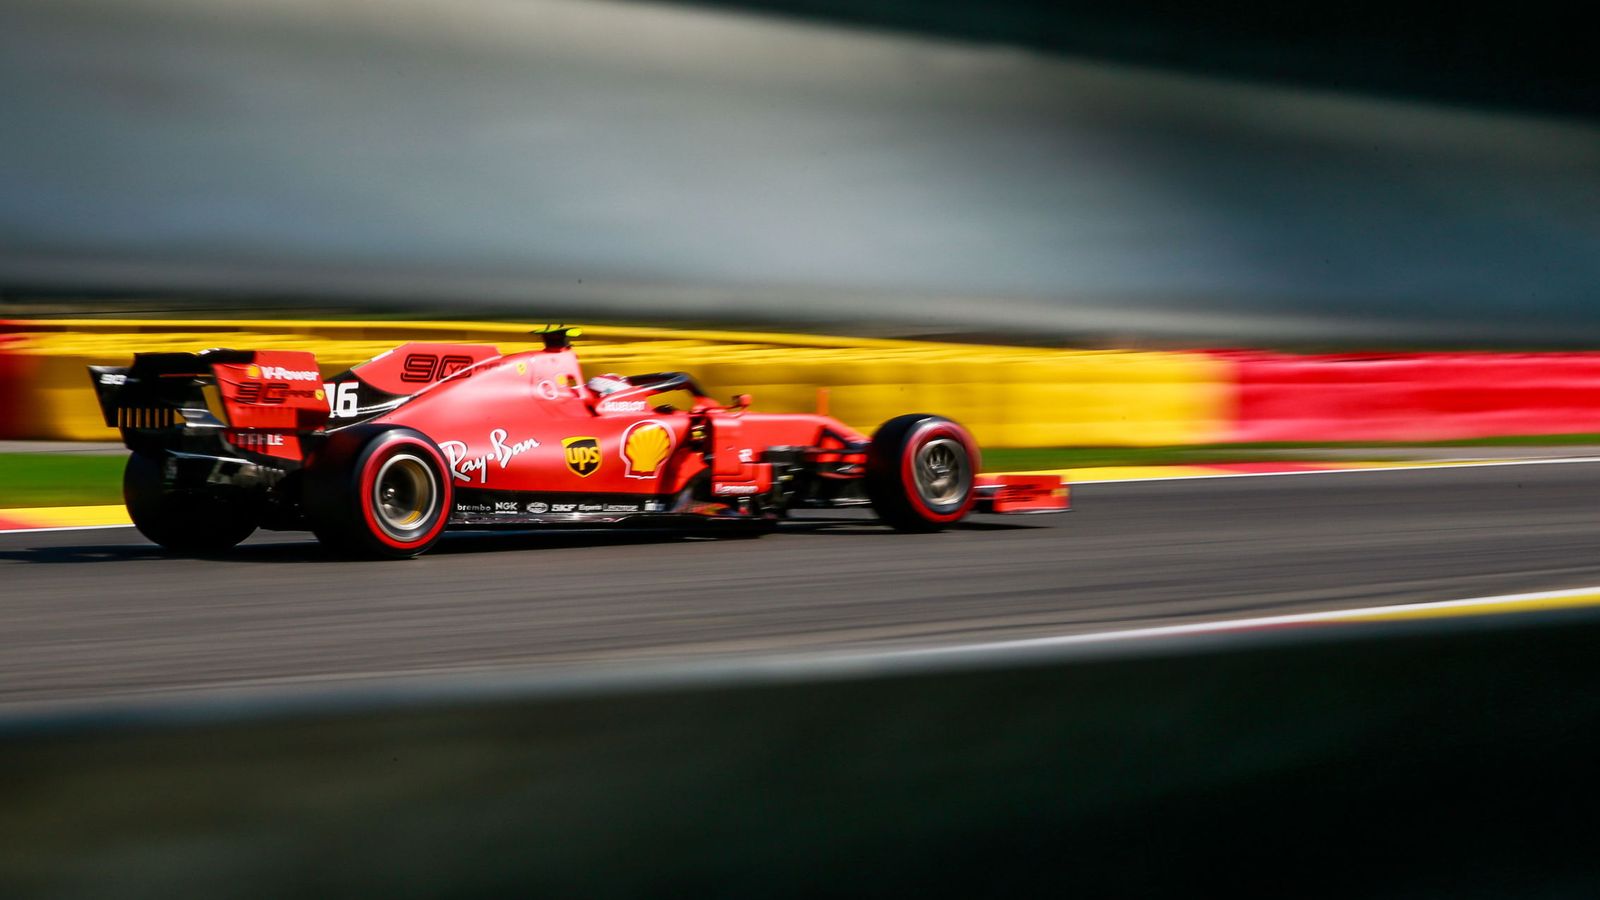 Foto: Los Ferrari vuelan en las zonas rápidas, y sus rivales quieren asegurarse de que su secreto sea legal. (REUTERS)